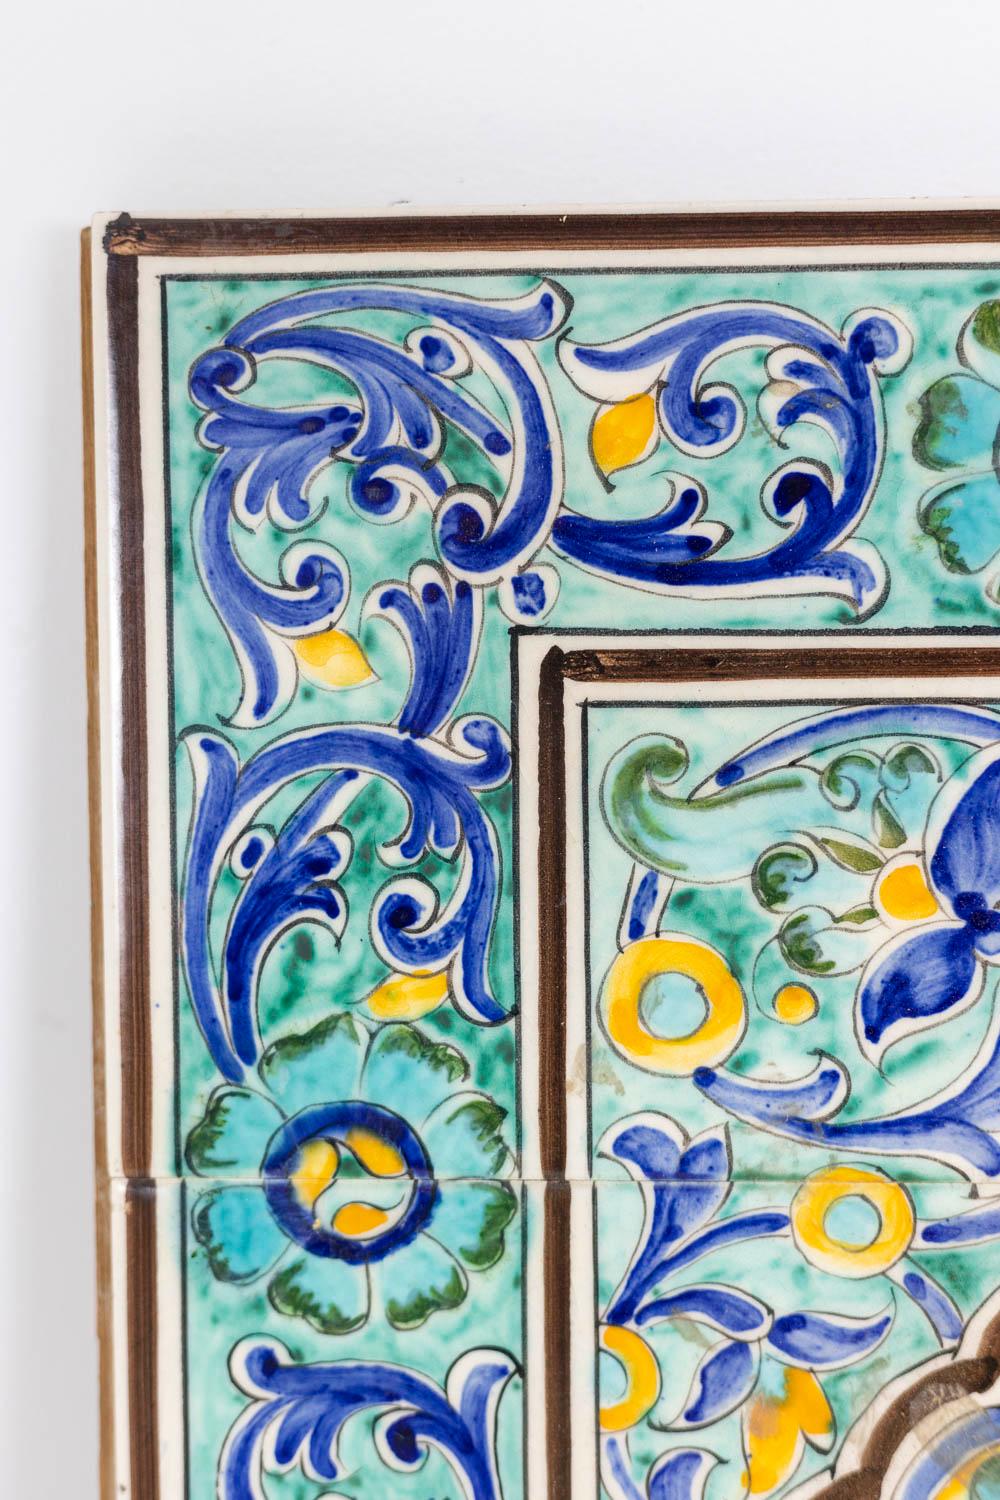 1987, datiert. 

Wandtafel aus Steingut, verziert mit floralen Azulejo-Kacheln, die einen Bogen in Akkolade und eine Chambord-Vase darstellen, auf einem Holzrahmen platziert.

Das Werk wurde 1987 realisiert.

Abmessungen: H 91 x L 61 x P 3